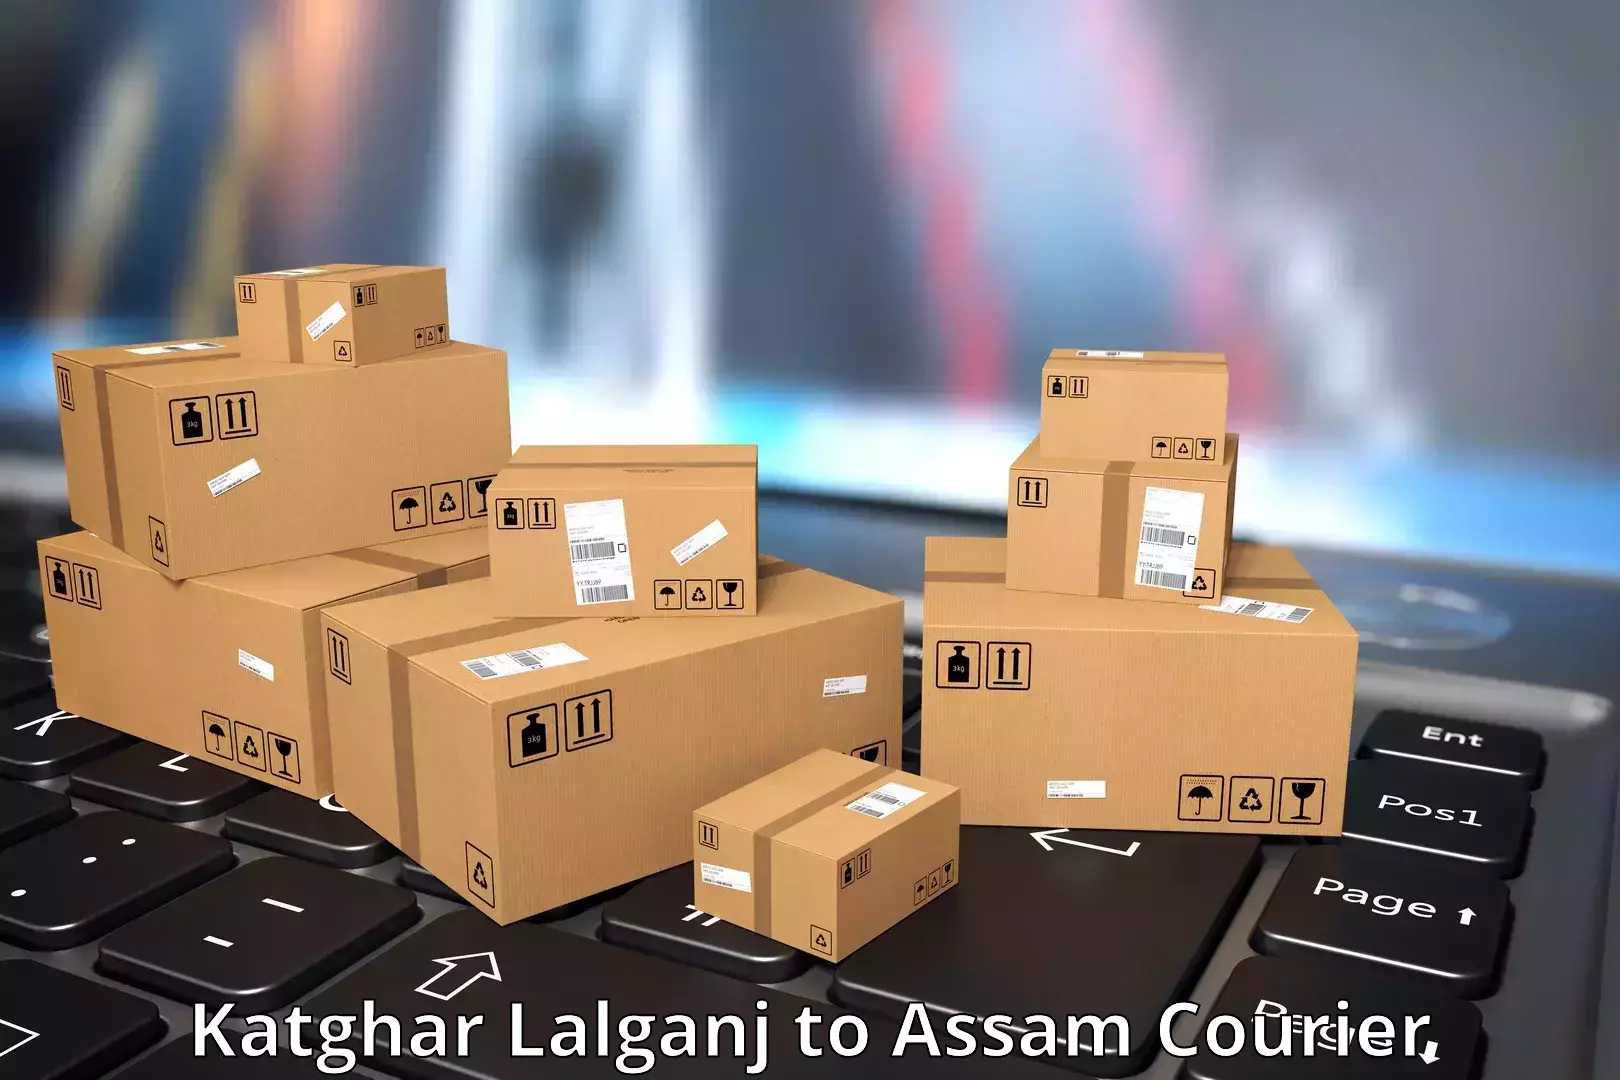 Express logistics service Katghar Lalganj to Kalaigaon